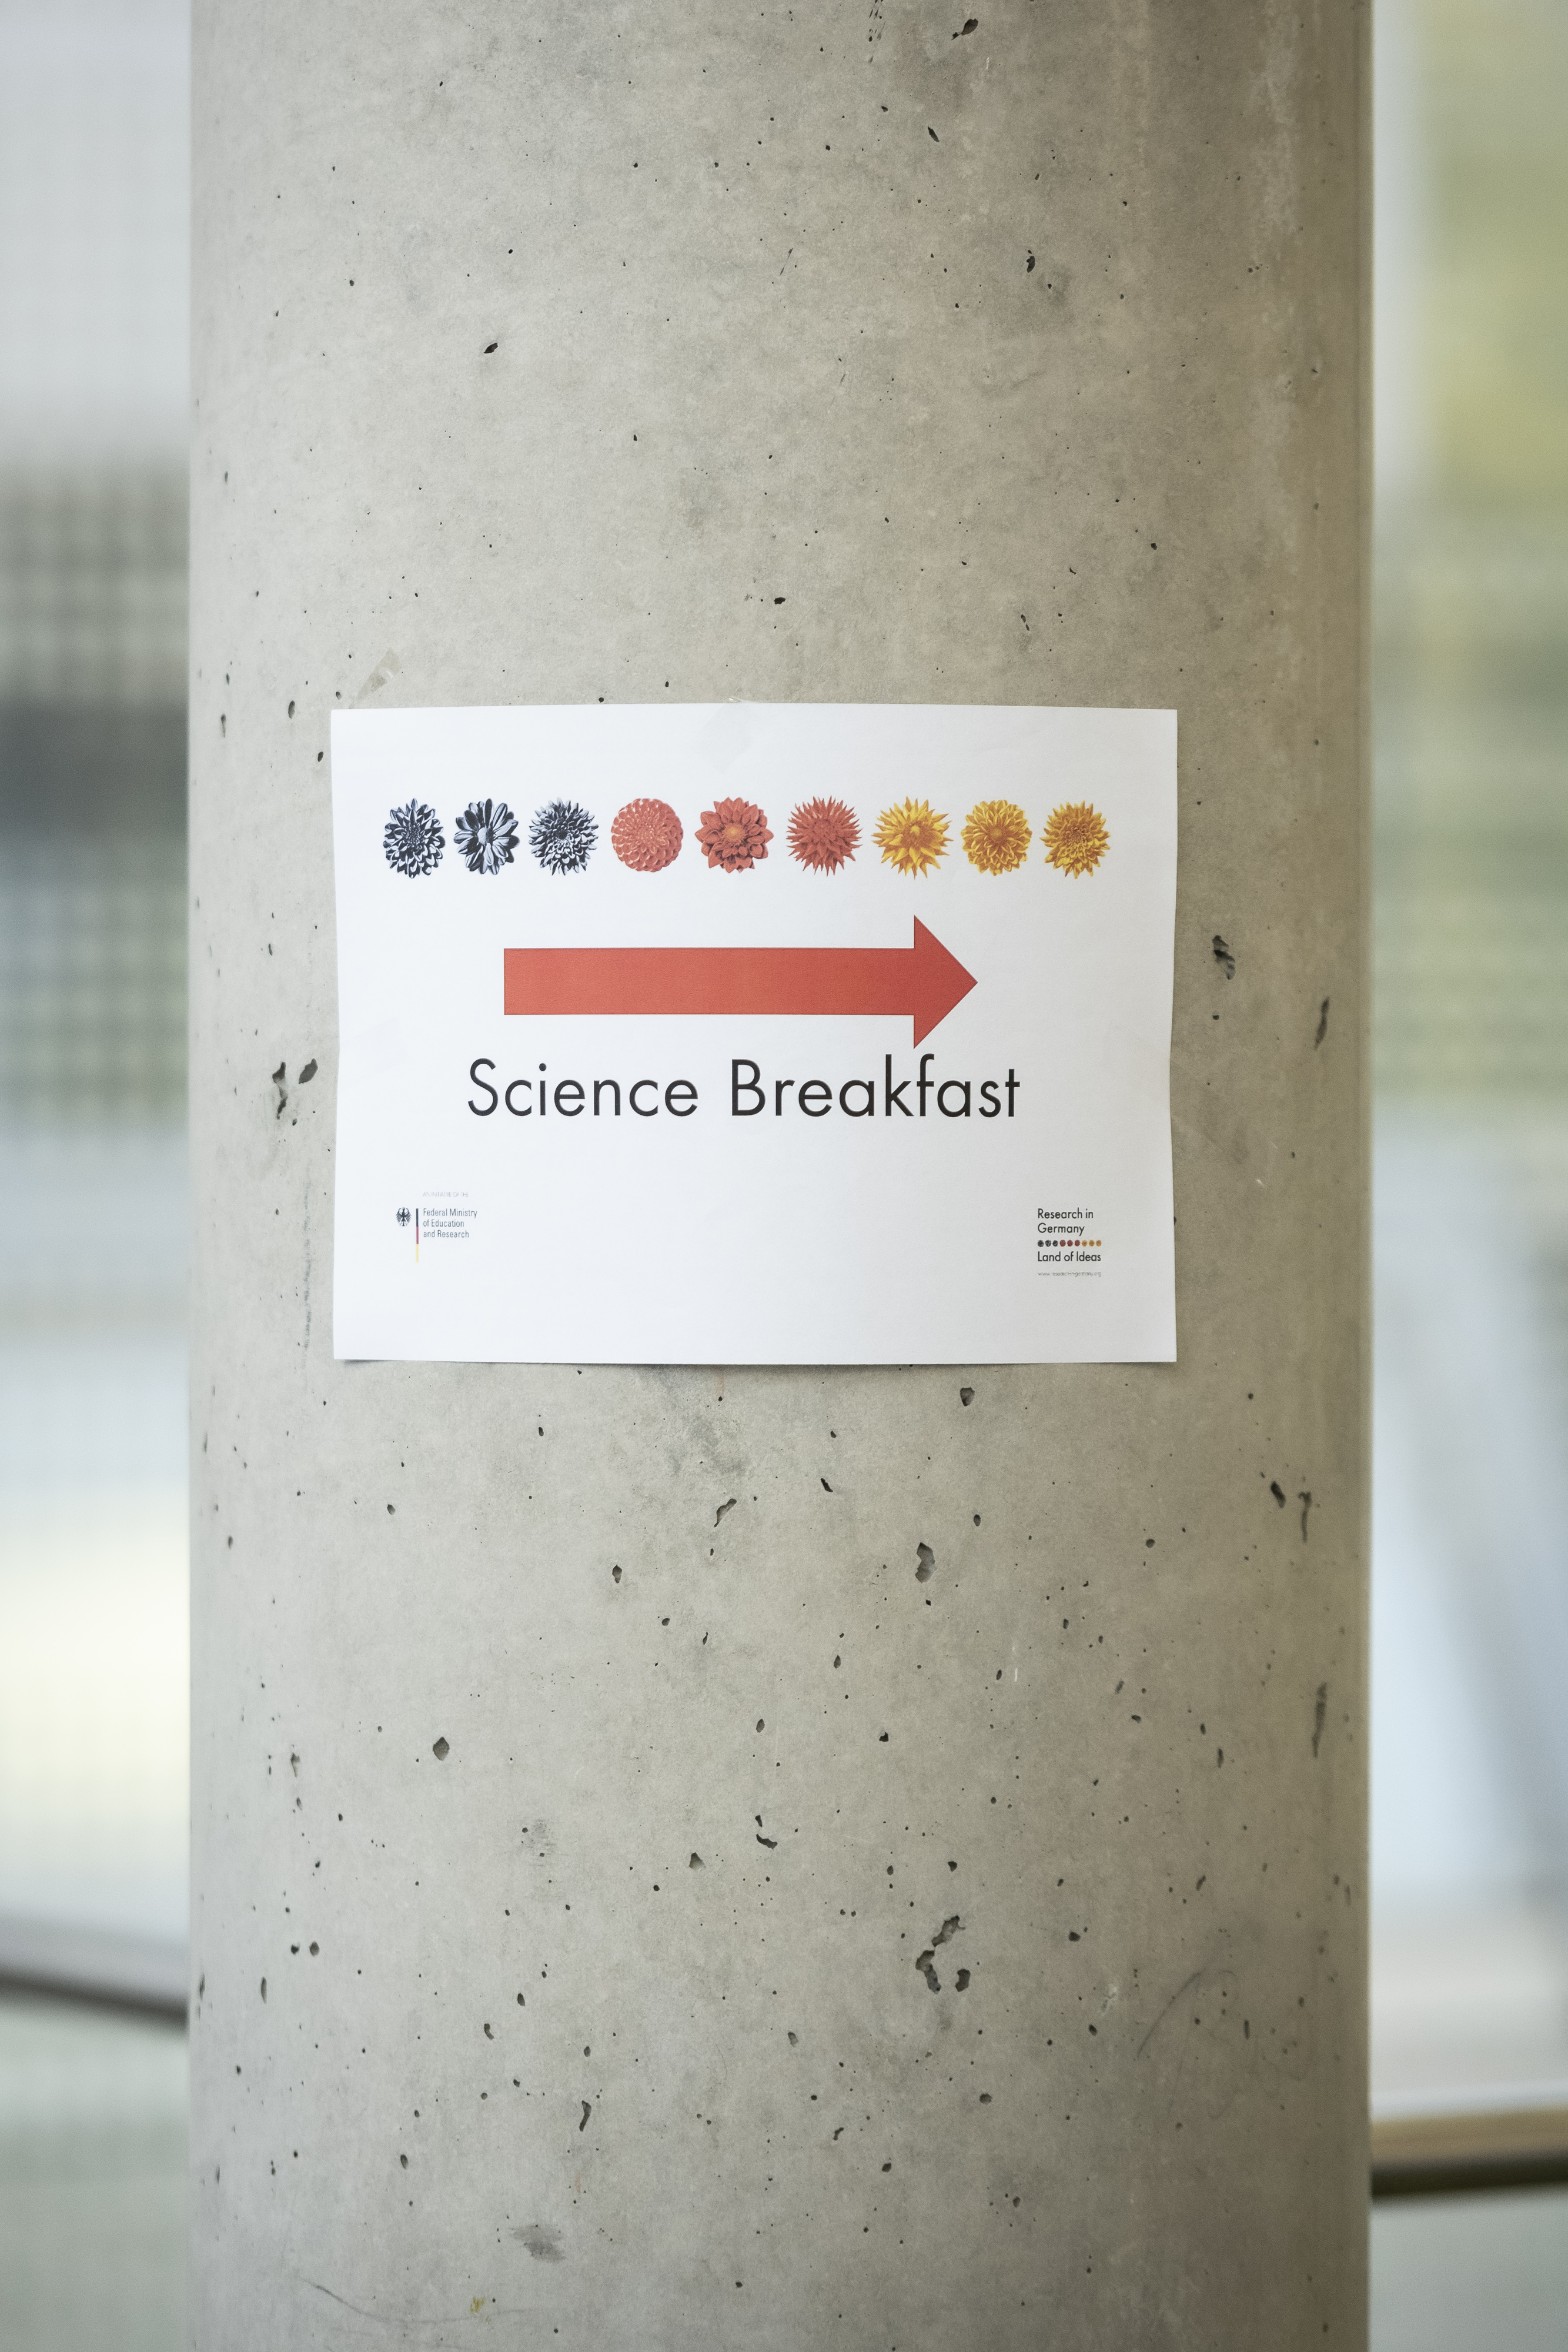 “Research in Germany“ lädt zum Frühstück ein